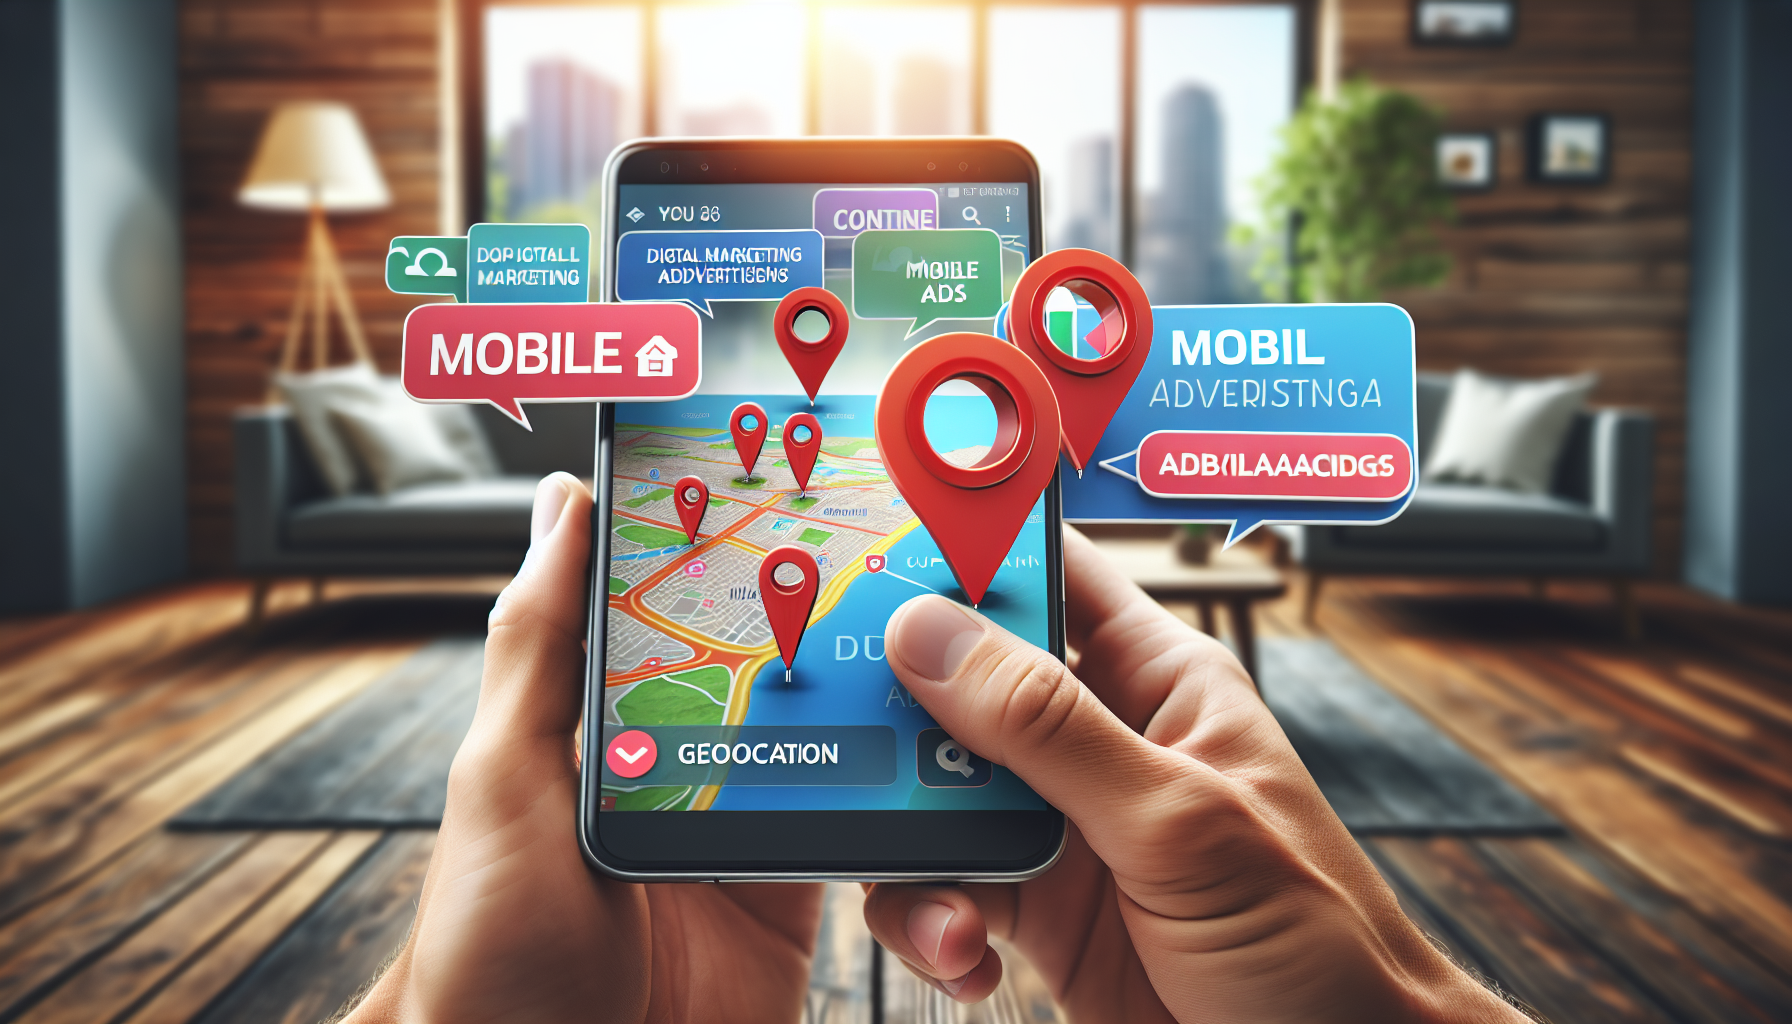 découvrez notre formation en marketing digital sur la publicité mobile et la géolocalisation. apprenez à cibler votre audience sur mobile et à exploiter la puissance de la géolocalisation dans vos campagnes publicitaires.